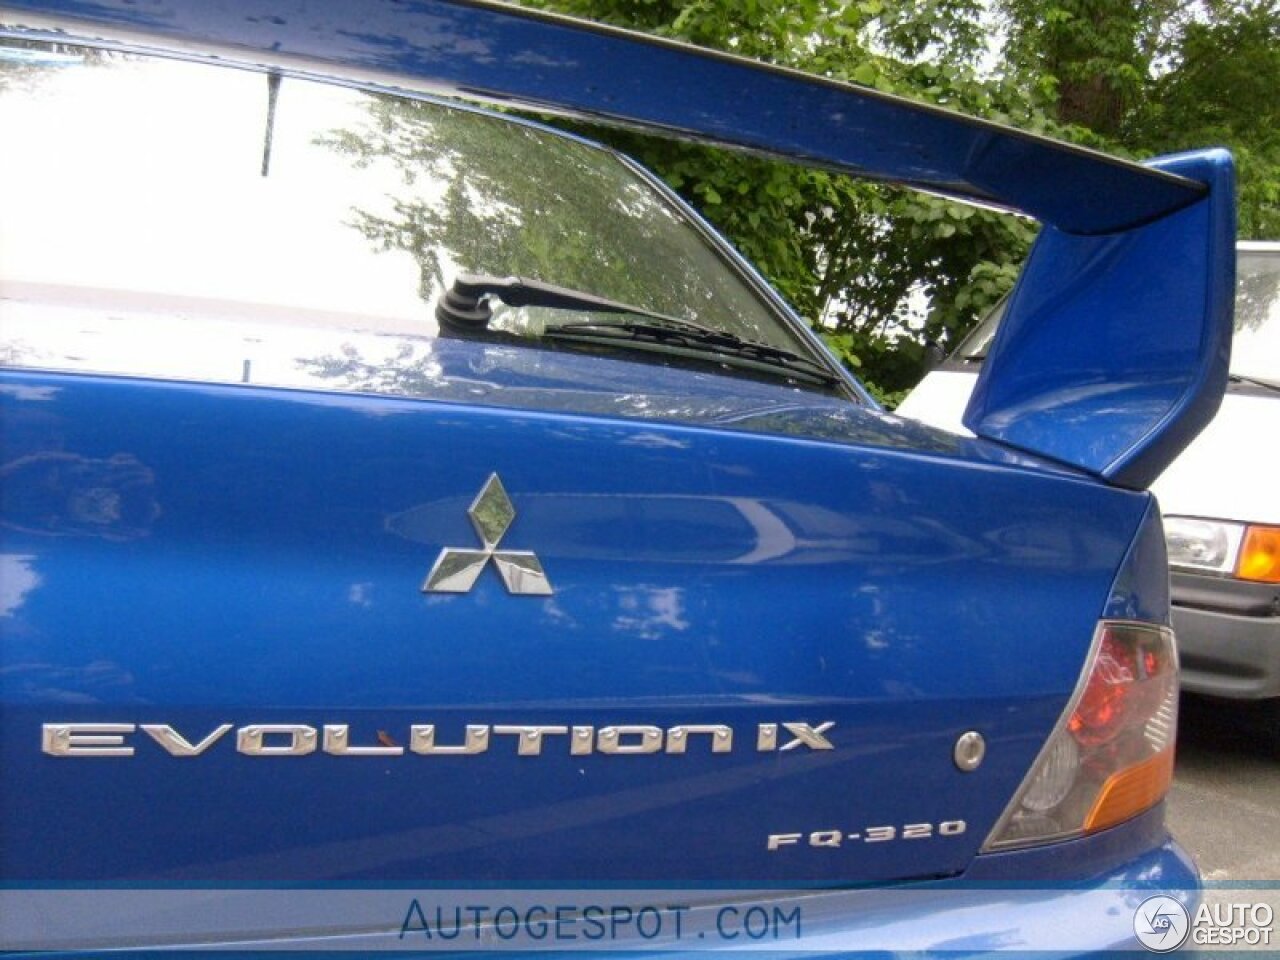 Mitsubishi Lancer Evolution IX MR FQ-320